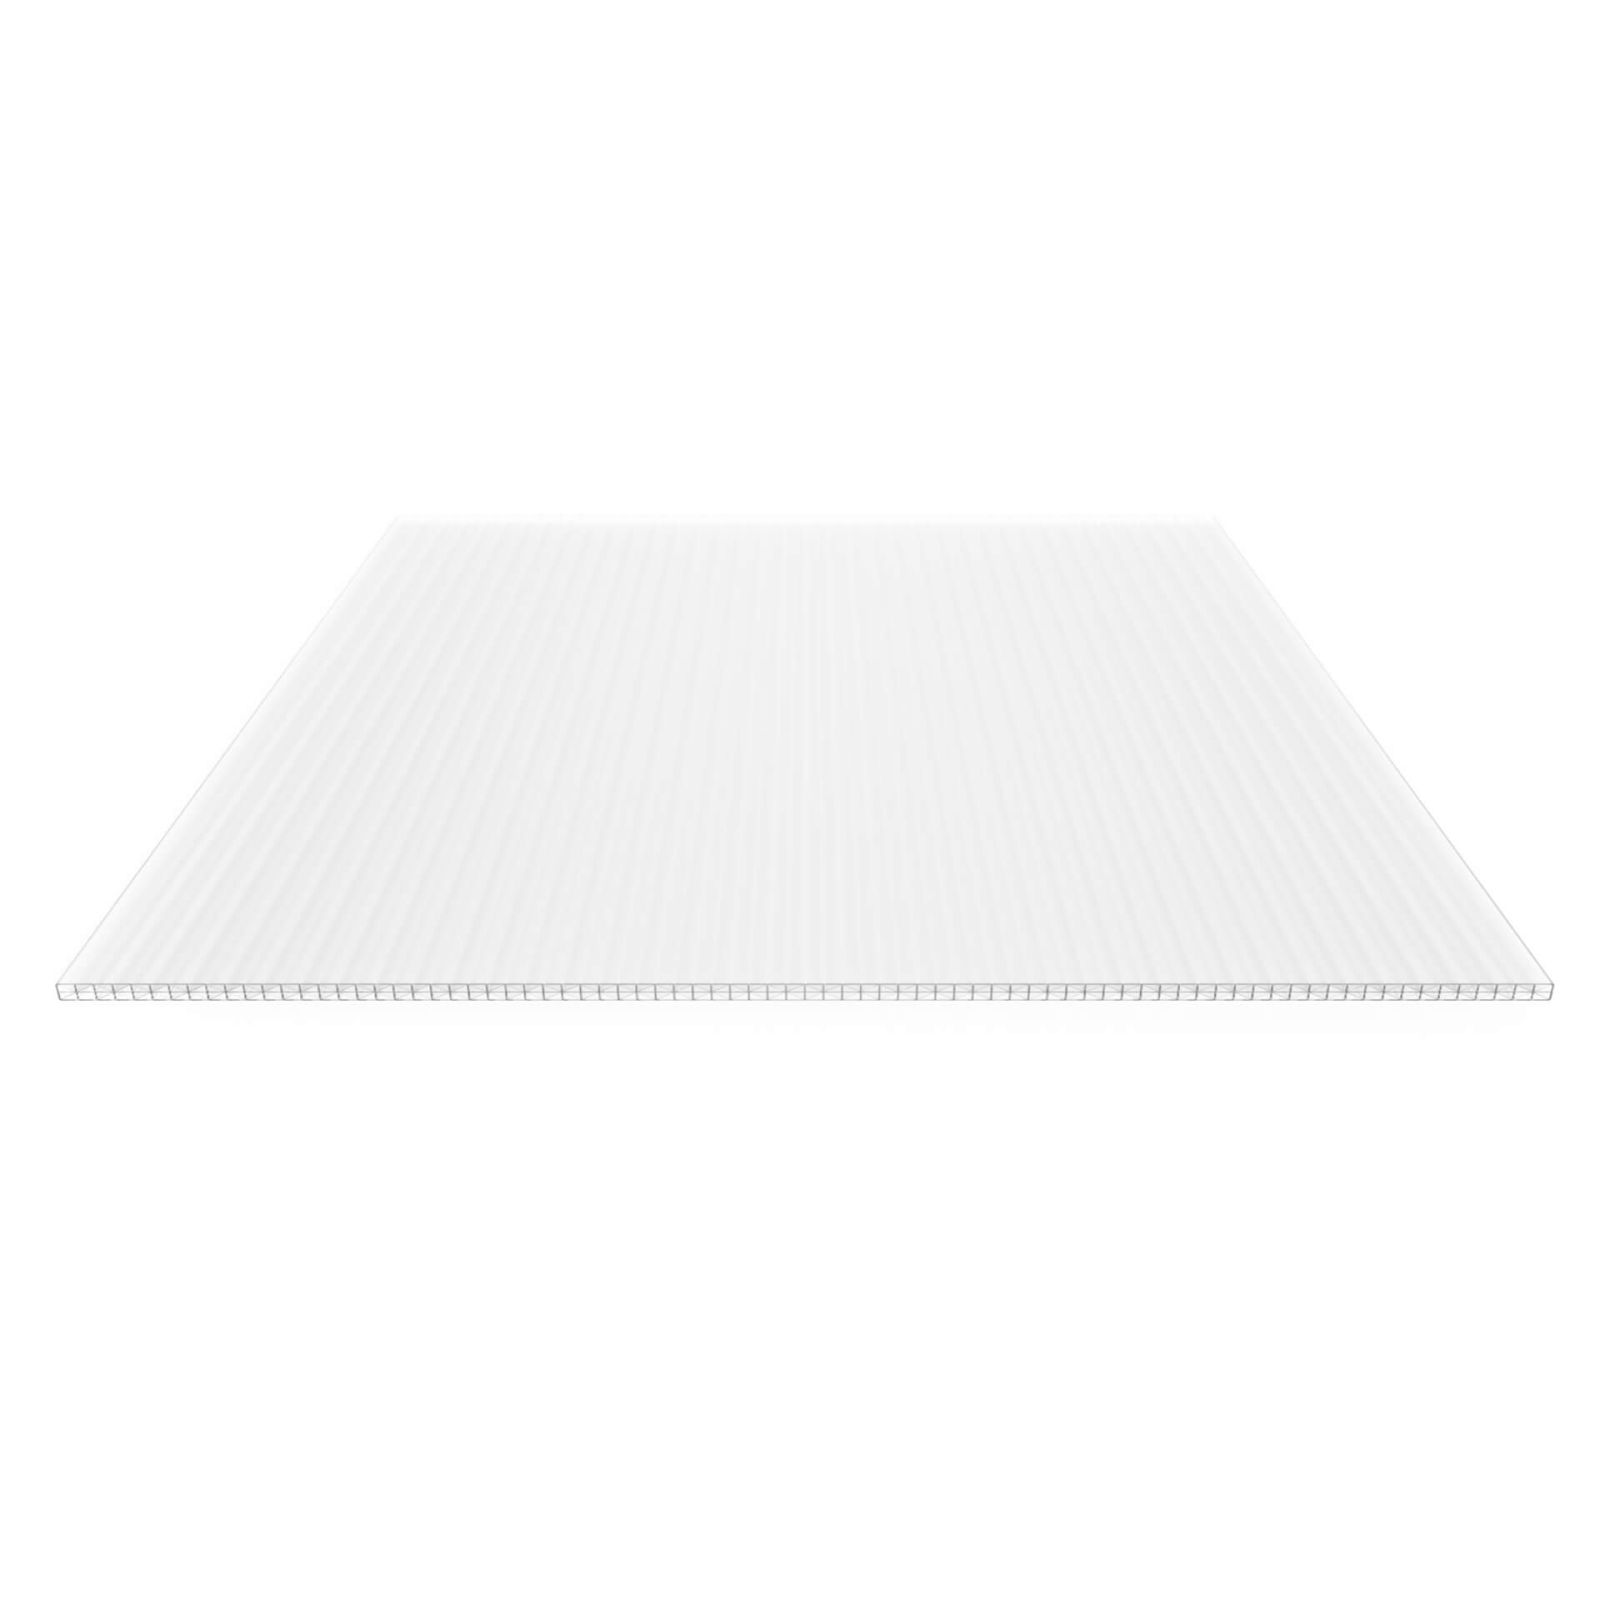 Polycarbonat Stegplatte | 16 mm | Profil Mendiger | Sparpaket | Plattenbreite 1200 mm | Opal Weiß | Extra stark | Breite 3,75 m | Länge 2,00 m #4